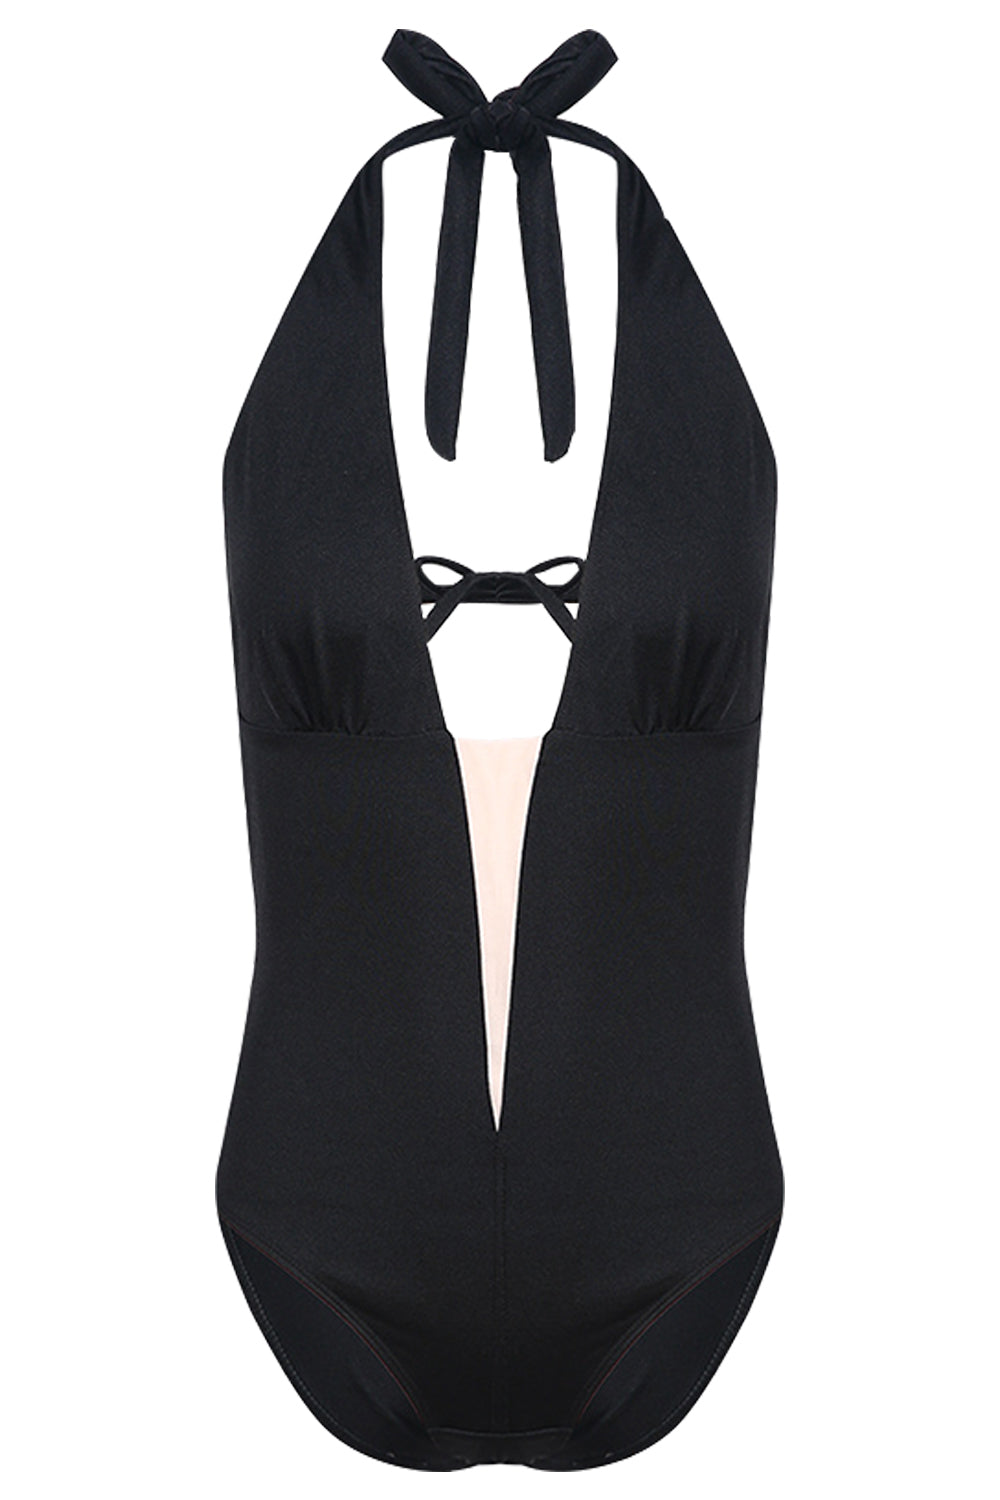 Iyasson Black Deep V-neckline Halter One-piece Swimsuit